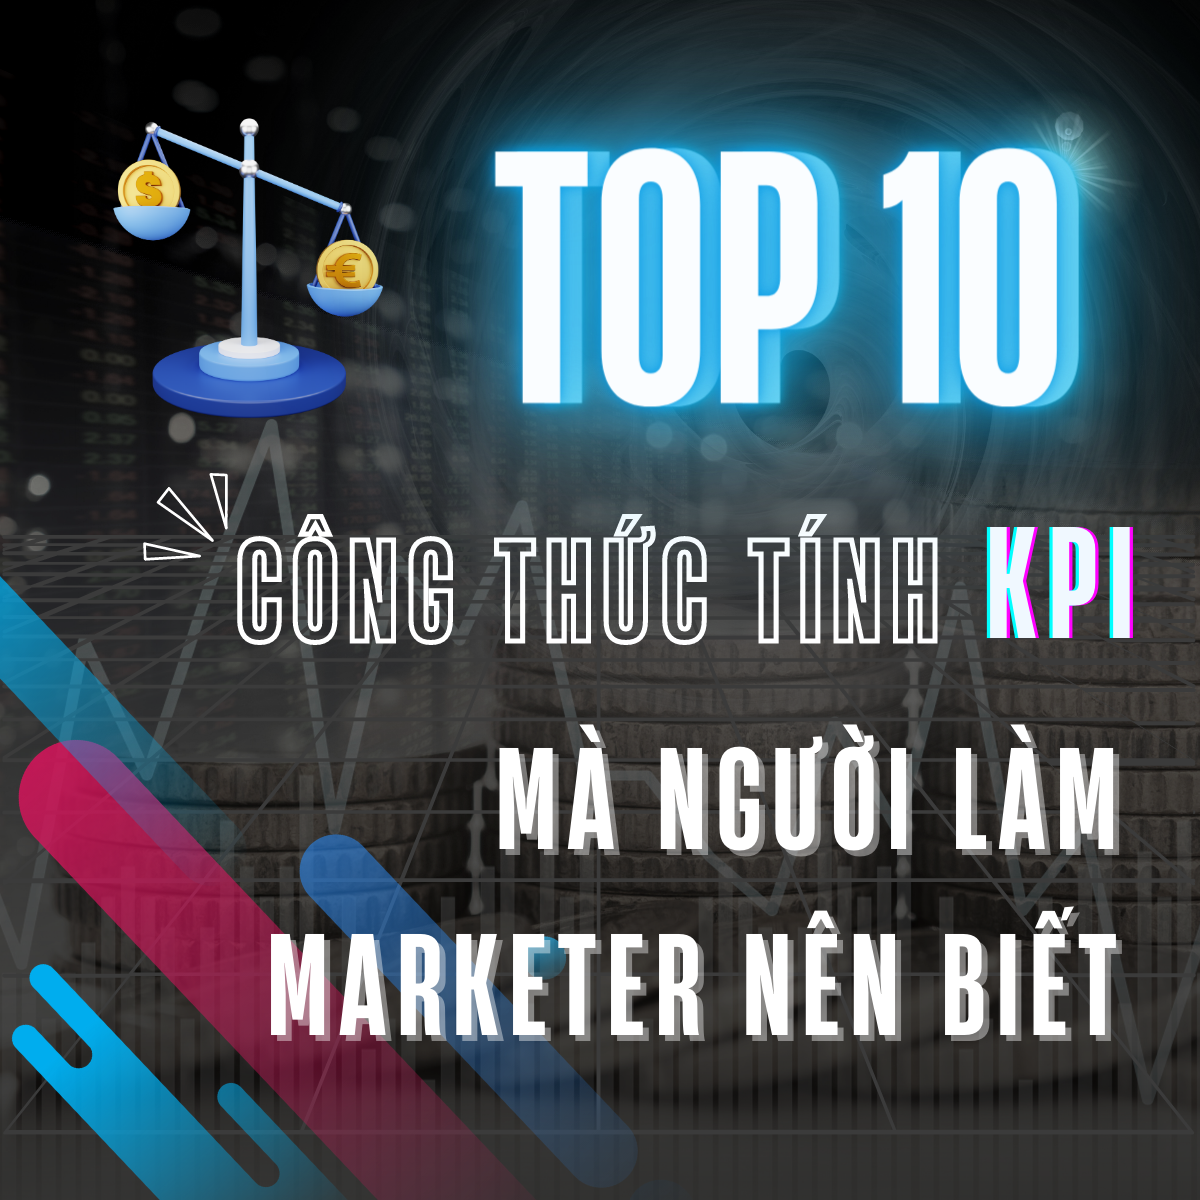 Top 10 công thức tính KPI